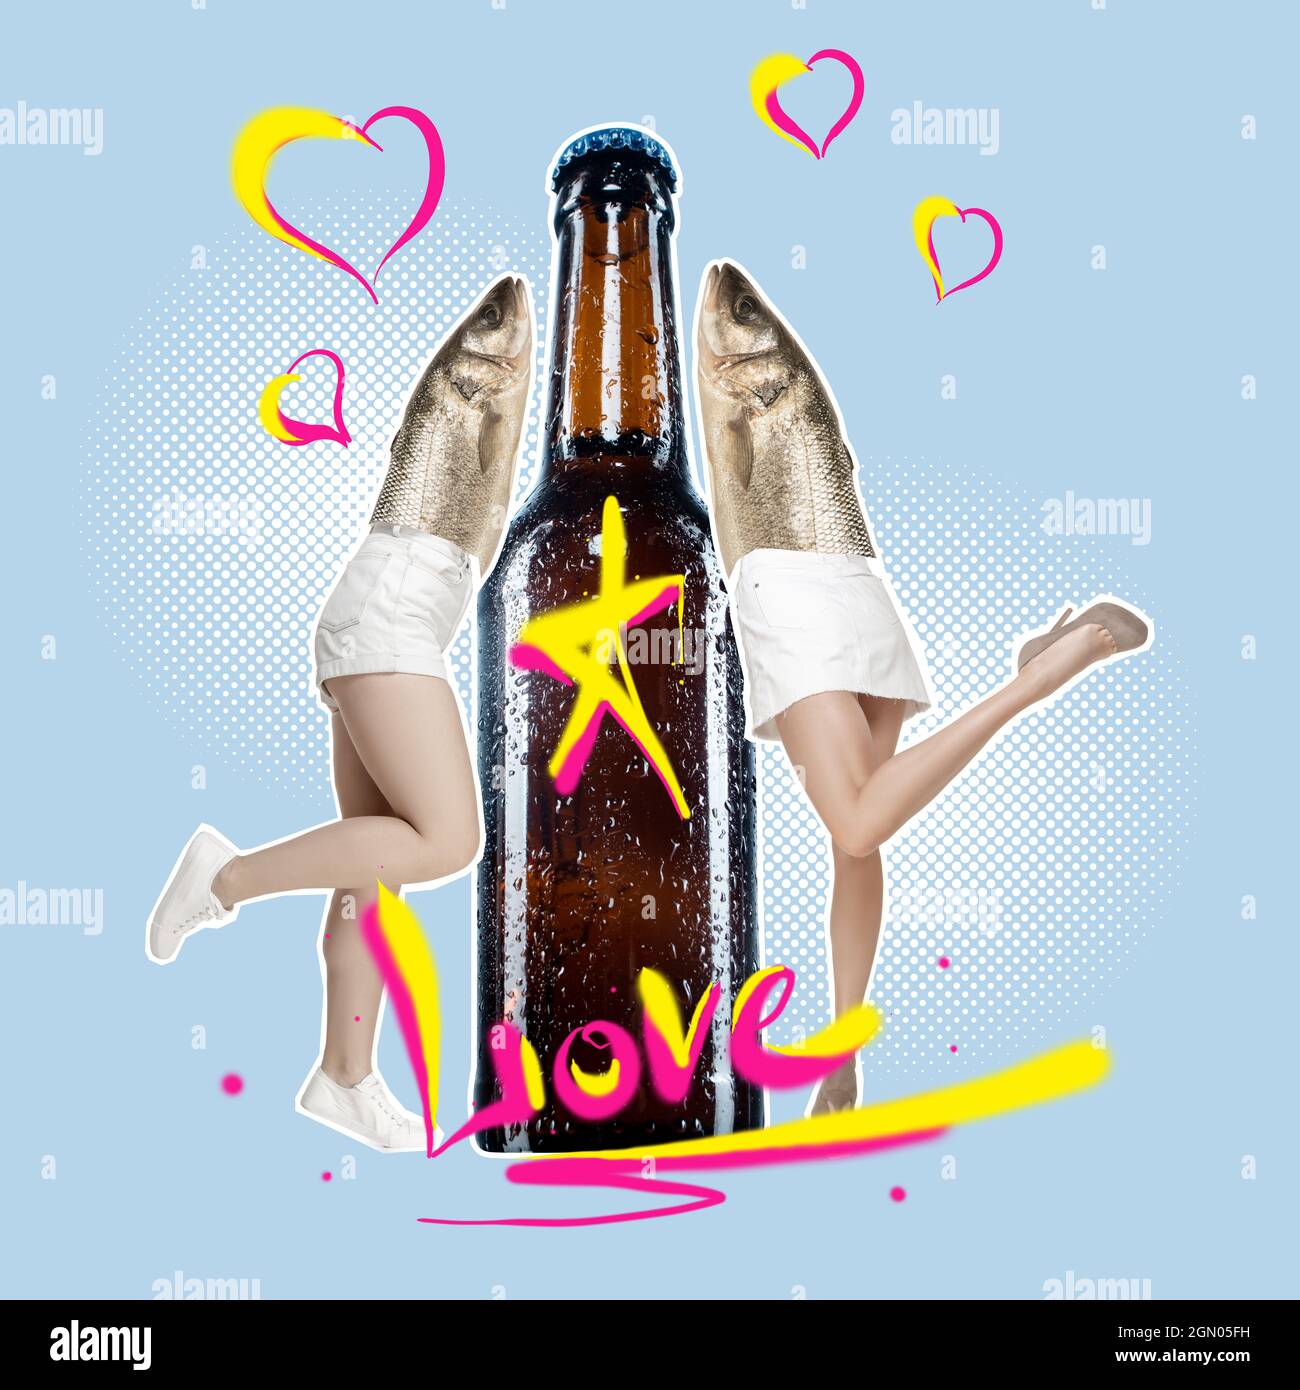 Zeitgenössische Kunstcollage aus Bierflasche und zwei Weibchen mit  Fischkopf, der sich auf Bier stützt. Kühles Getränk Stockfotografie - Alamy